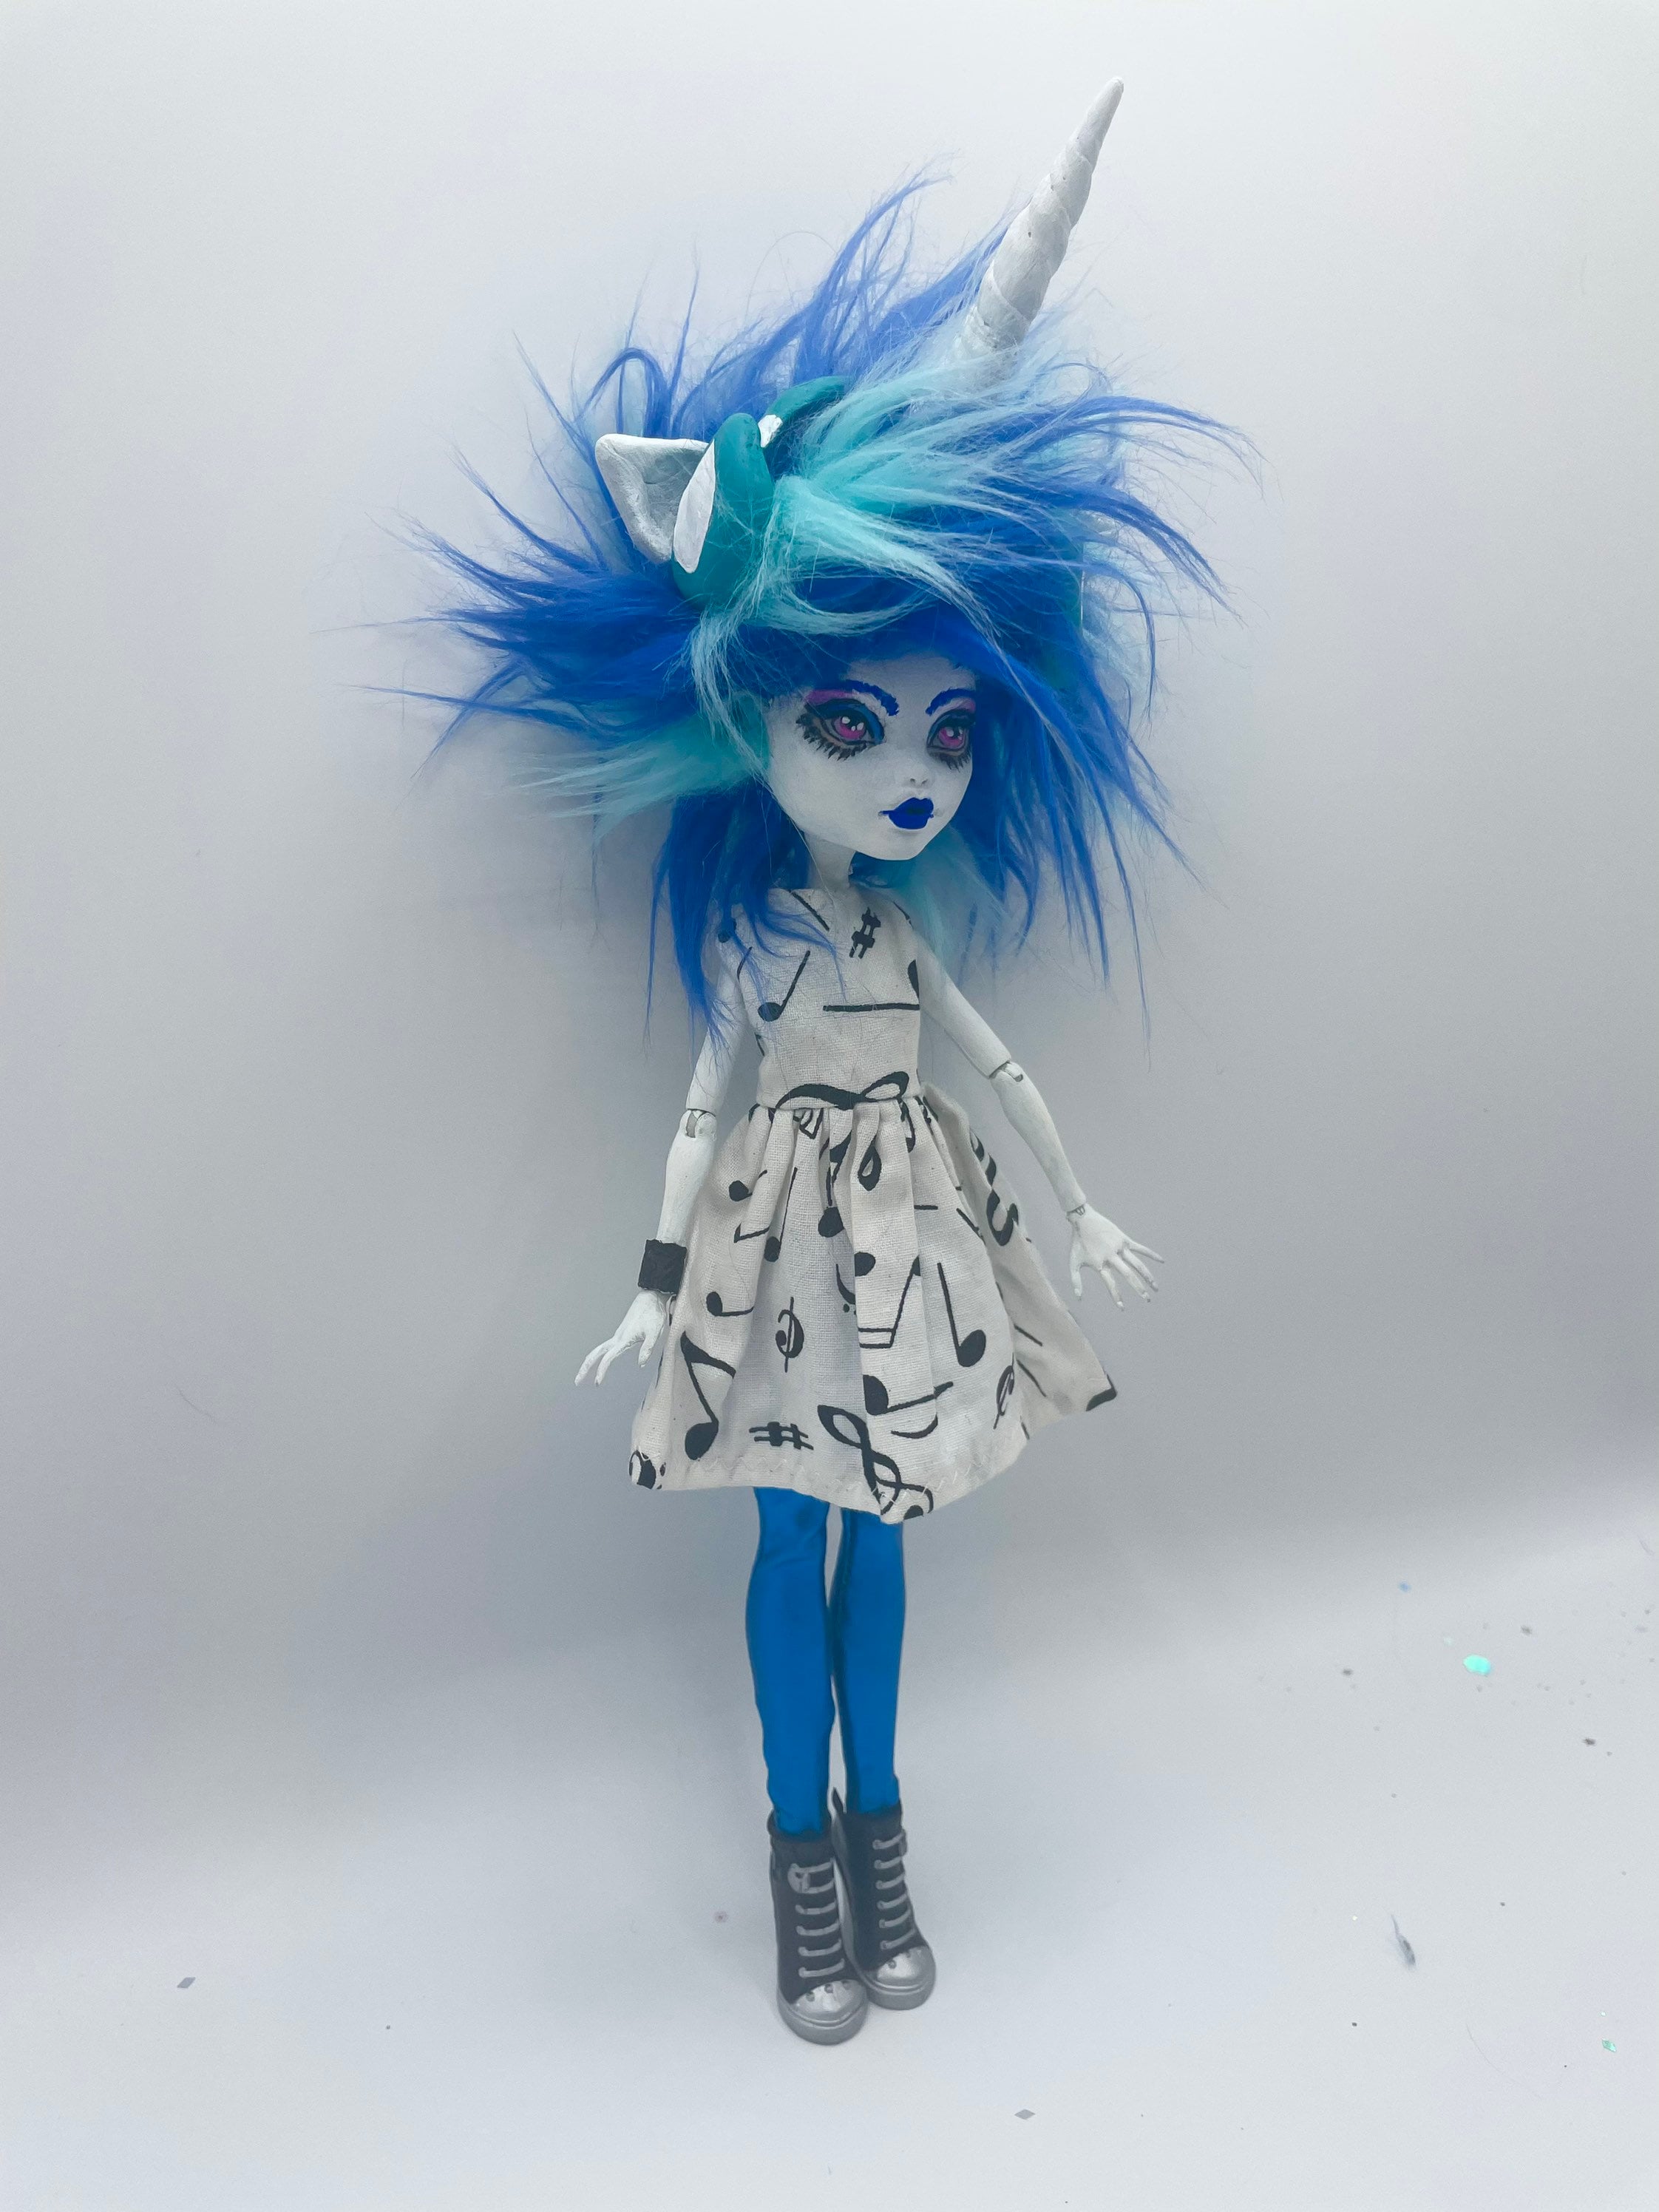 IN STOCK 1 reroot tool for Doll Hair for OOAK Custom Monster High My Little  Pony Blythe